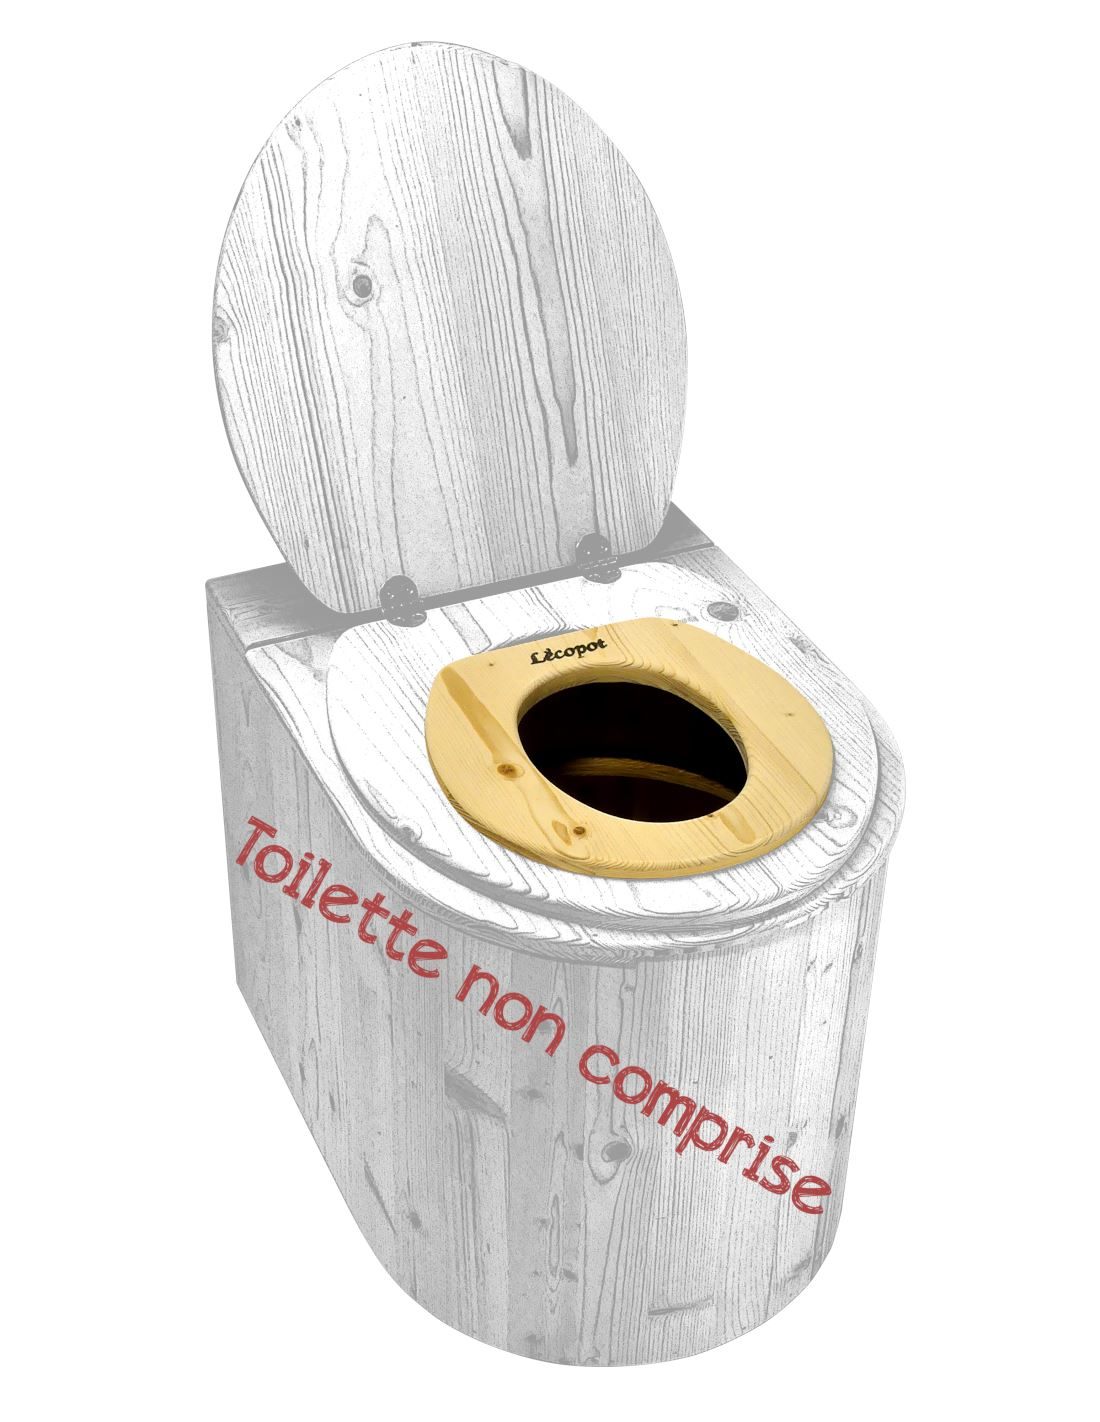 Réducteur de toilette - Toilette sèche bébé LECOPOT